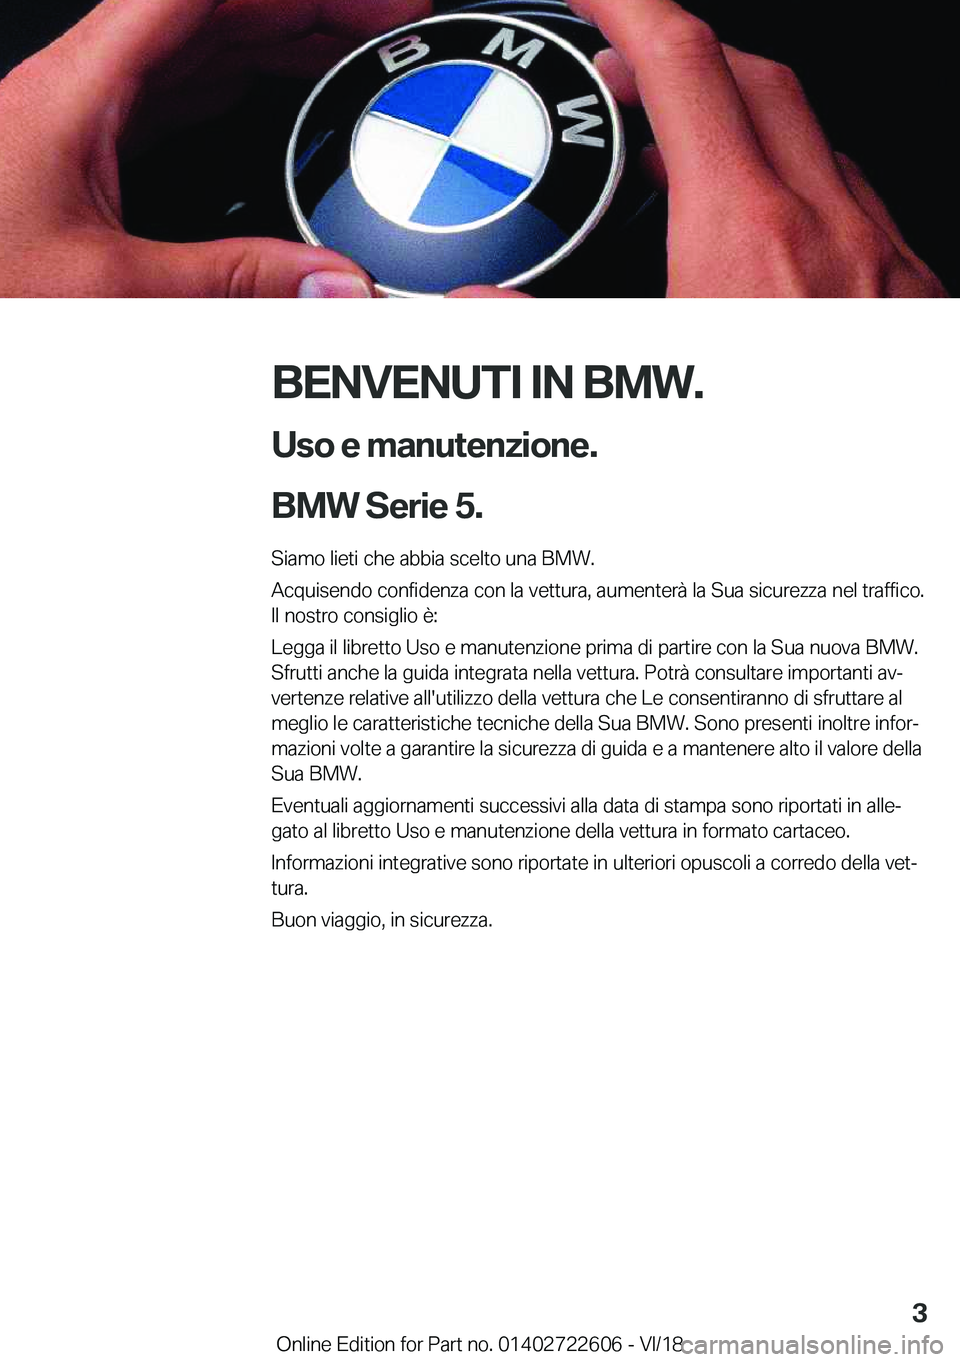 BMW 5 SERIES 2019  Libretti Di Uso E manutenzione (in Italian) �B�E�N�V�E�N�U�T�I��I�N��B�M�W�.�U�s�o��e��m�a�n�u�t�e�n�z�i�o�n�e�.
�B�M�W��S�e�r�i�e��5�.
�S�i�a�m�o��l�i�e�t�i��c�h�e��a�b�b�i�a��s�c�e�l�t�o��u�n�a��B�M�W�. �A�c�q�u�i�s�e�n�d�o��c�o�